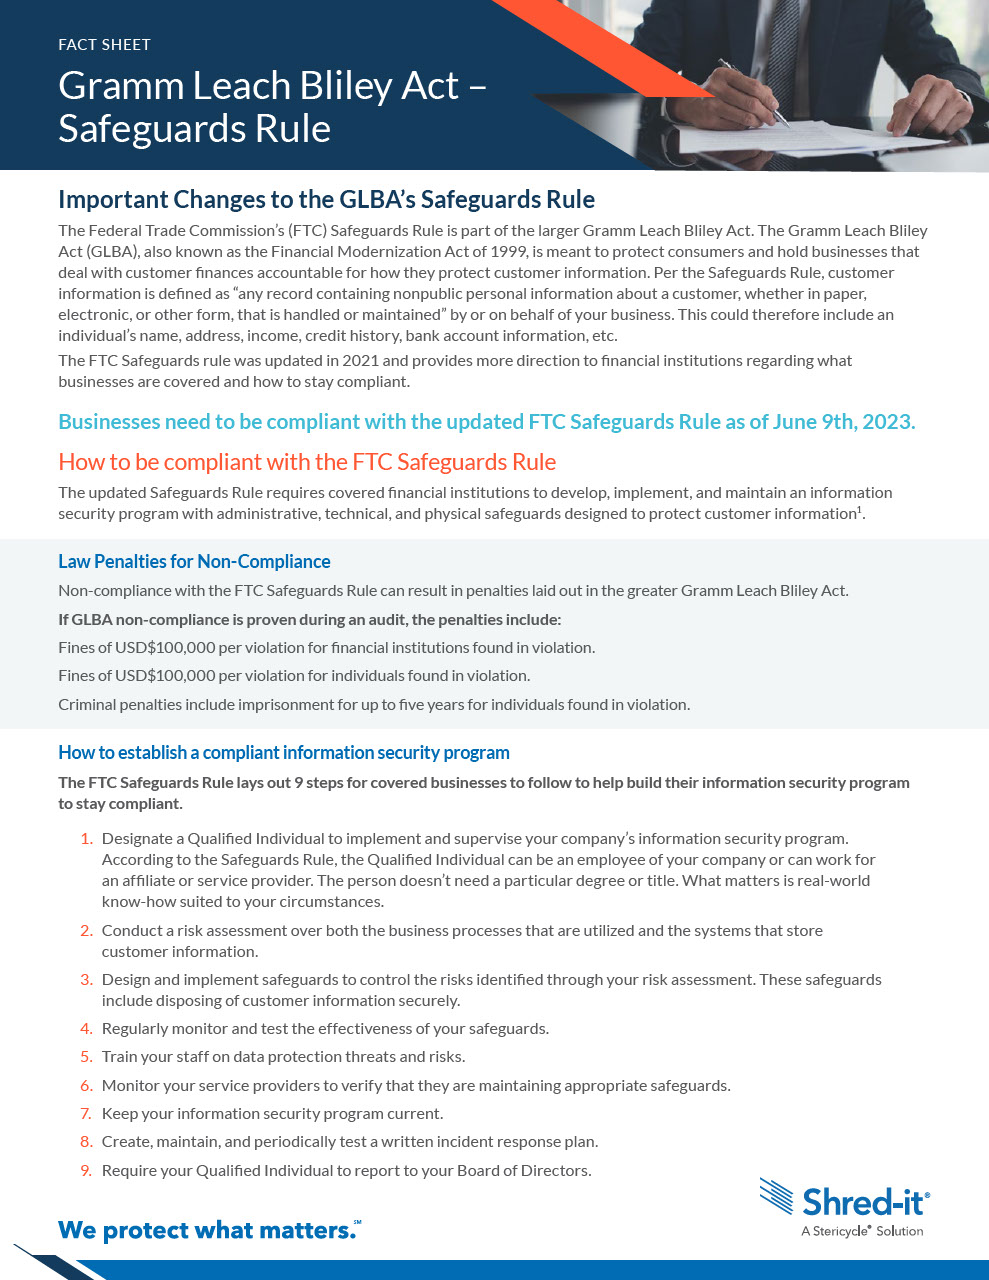 GLBA-Safeguards-Fact Sheet.pdf